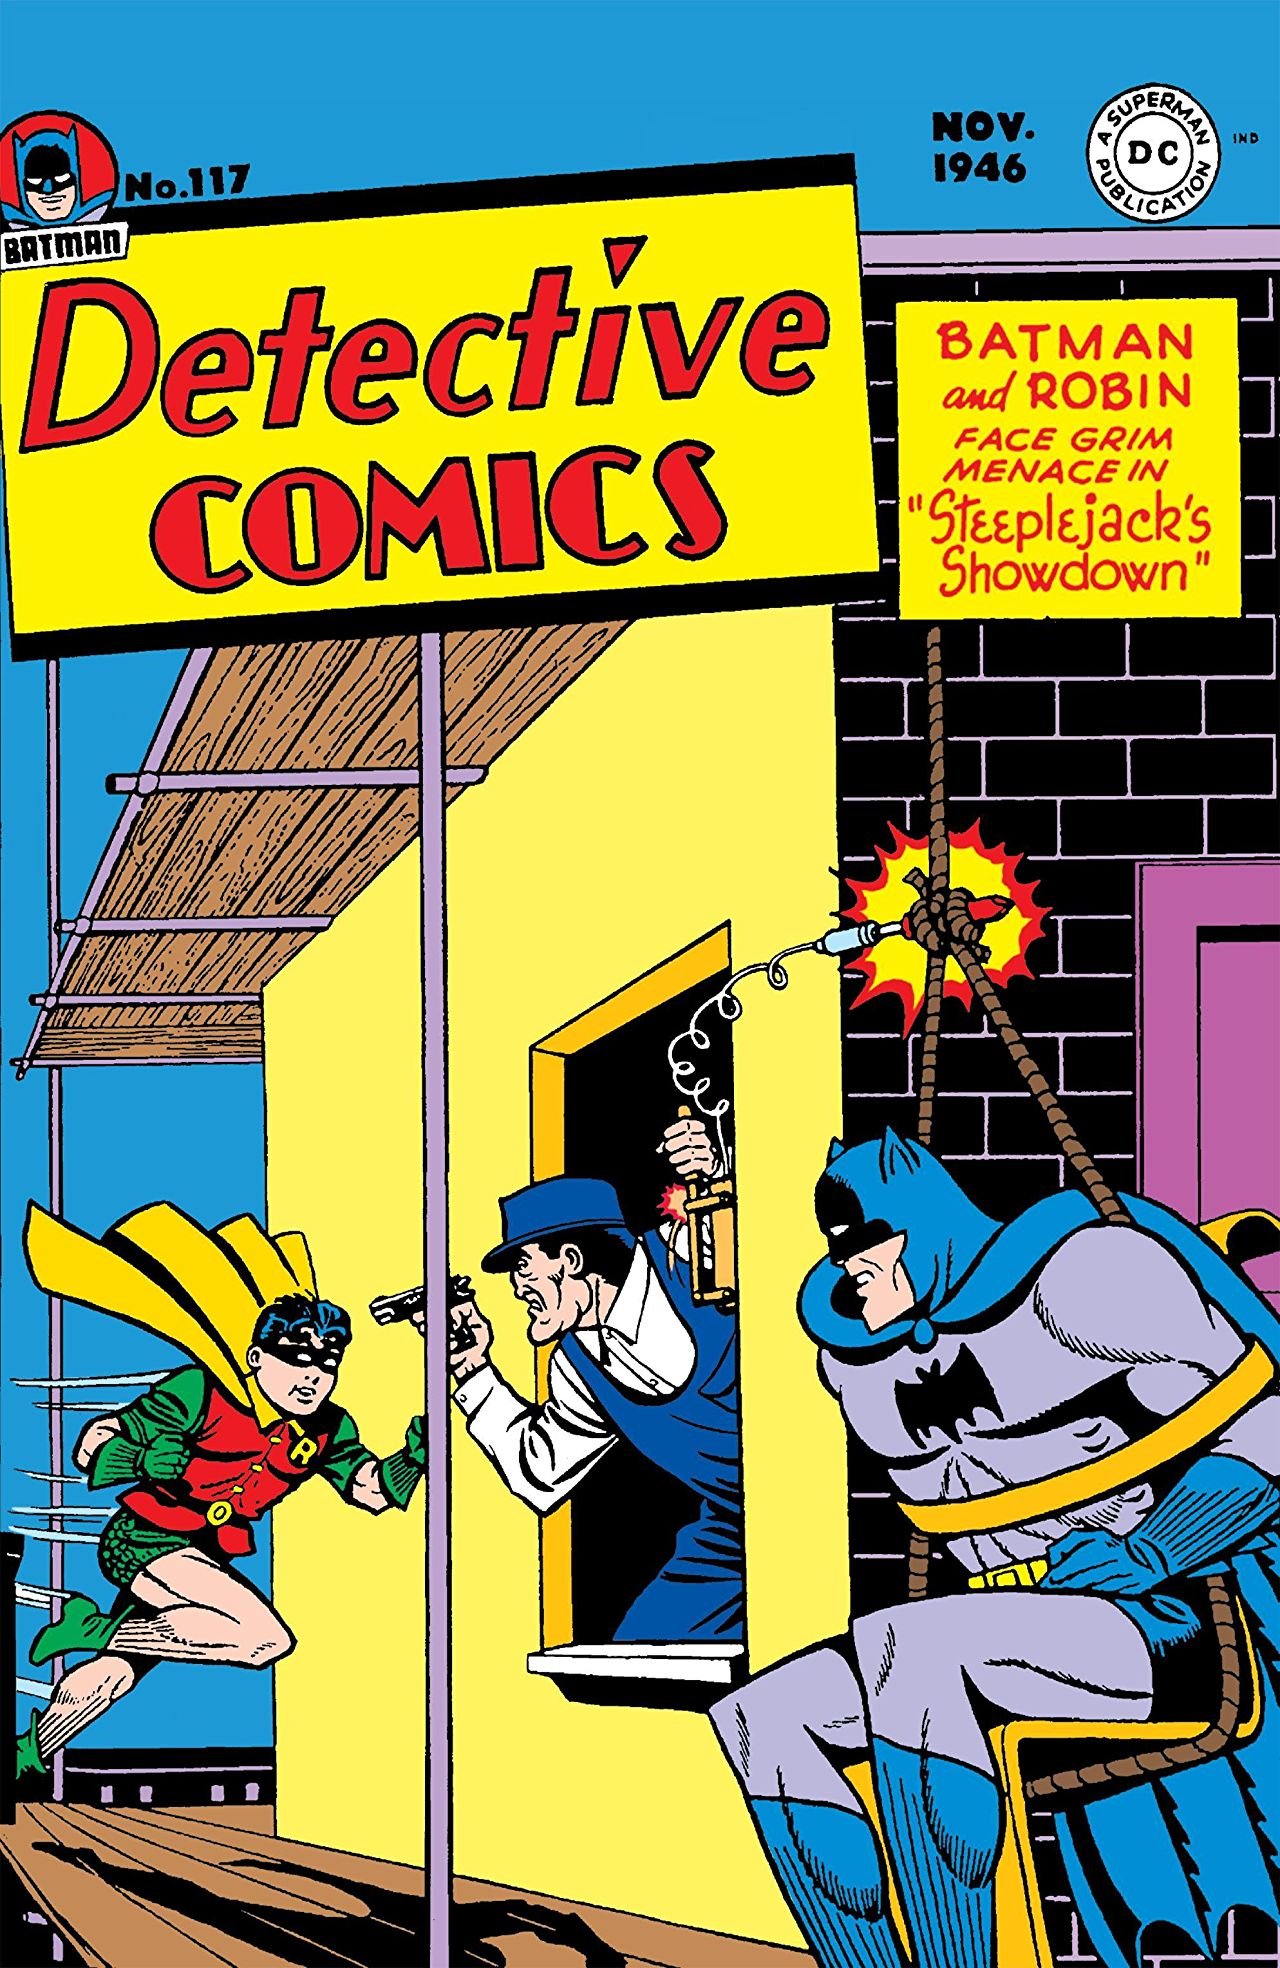 Detective Comics #117, 1946